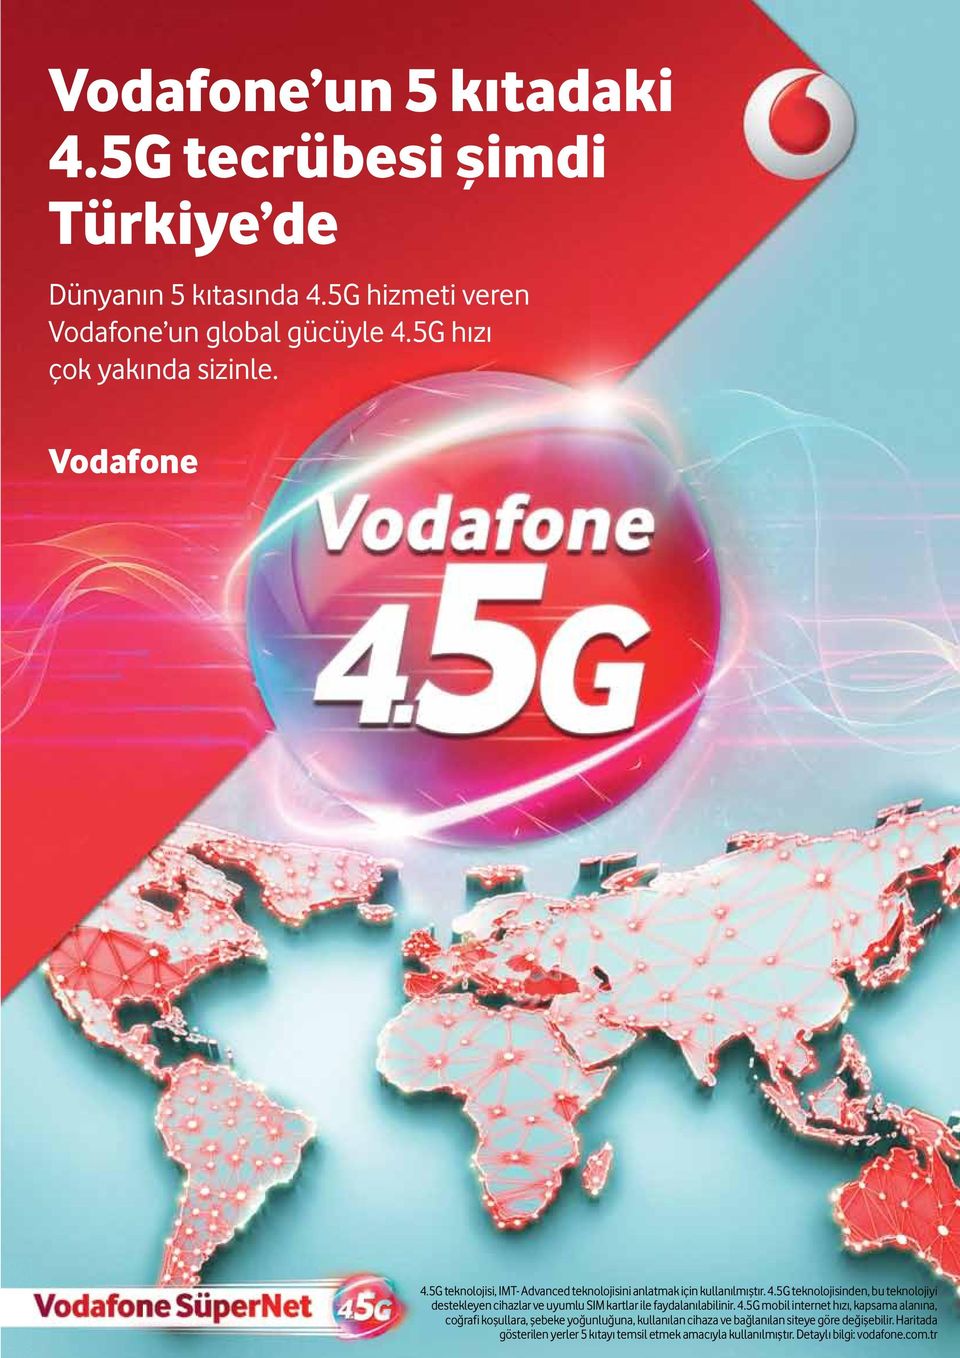 4.5G mobil internet hızı, kapsama alanına, coğrafi koşullara, şebeke yoğunluğuna, kullanılan cihaza ve bağlanılan www.time-medya.